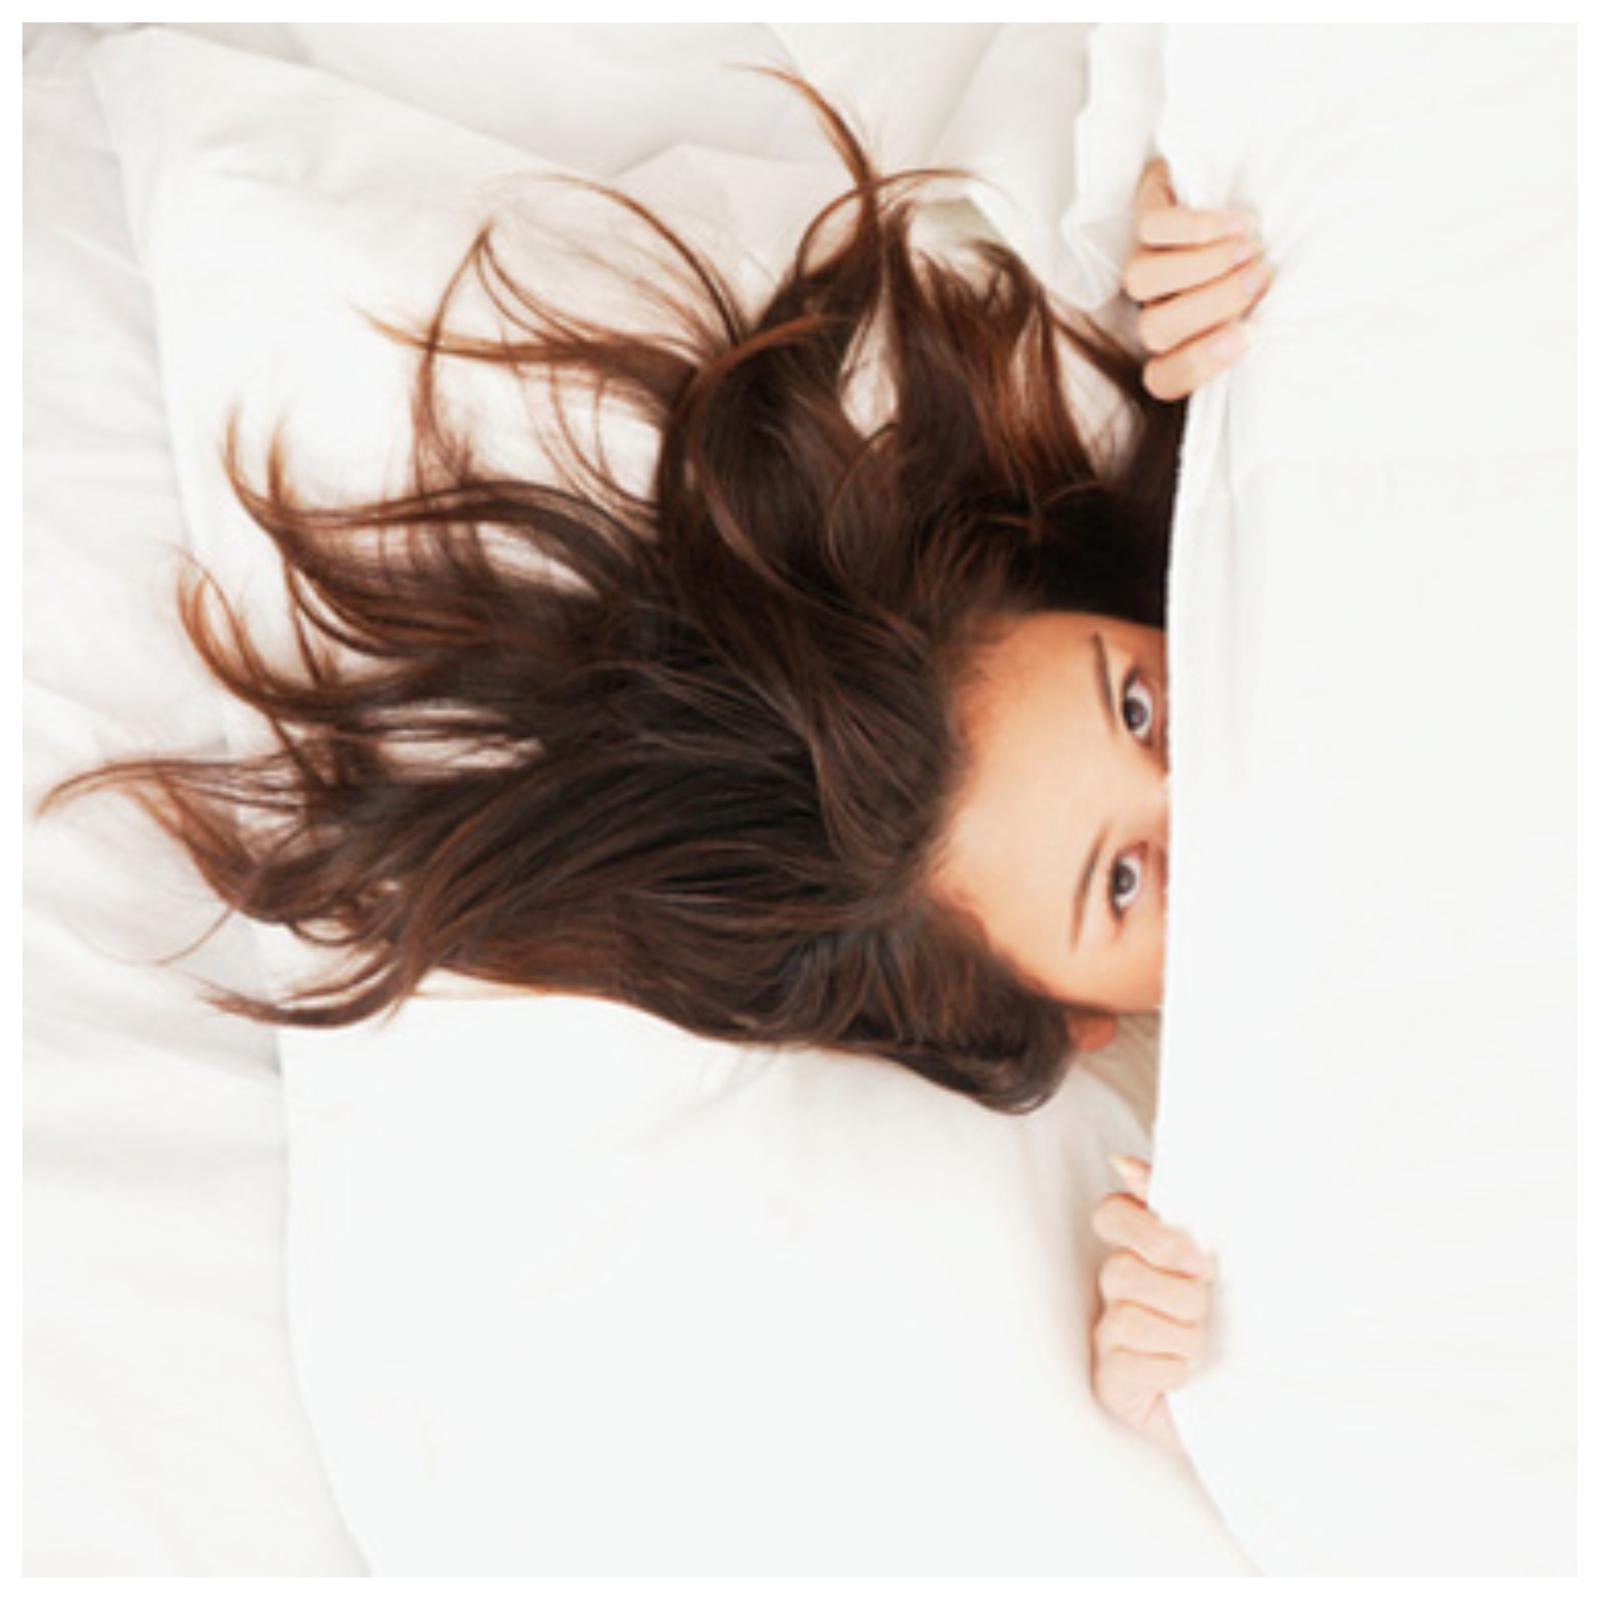 Женская зажатость в постели: причины и решения